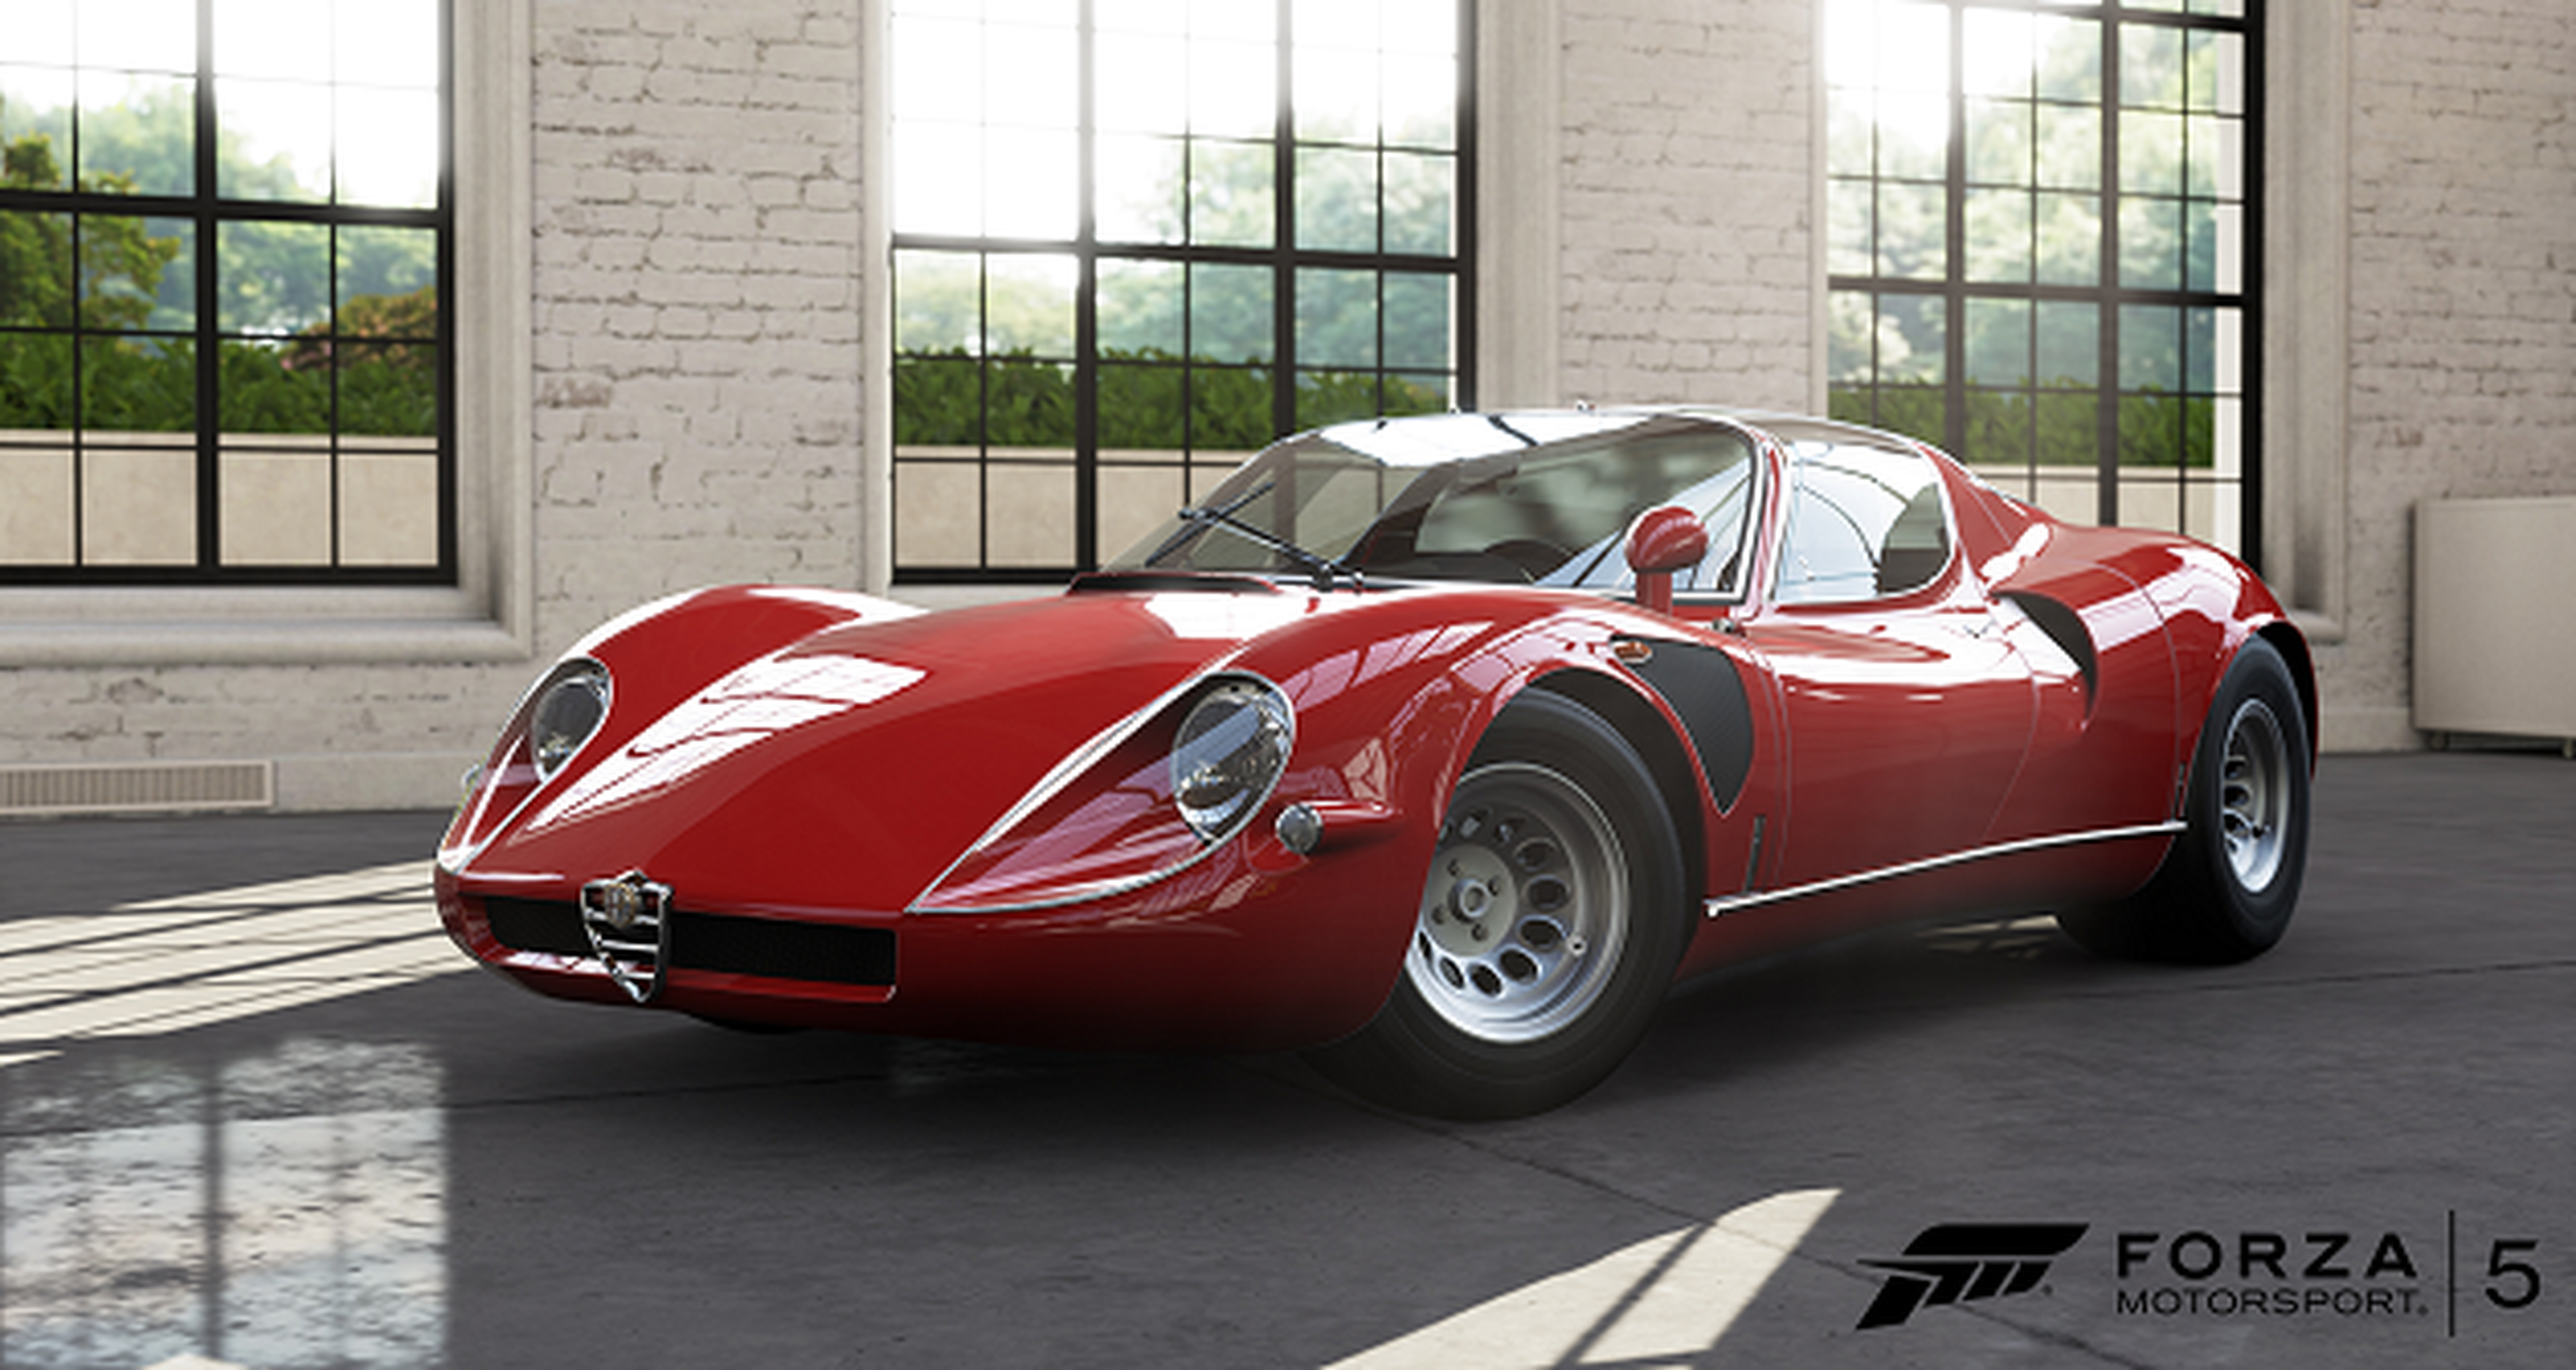 Nuevos coches en Forza Motorsport 5 mañana